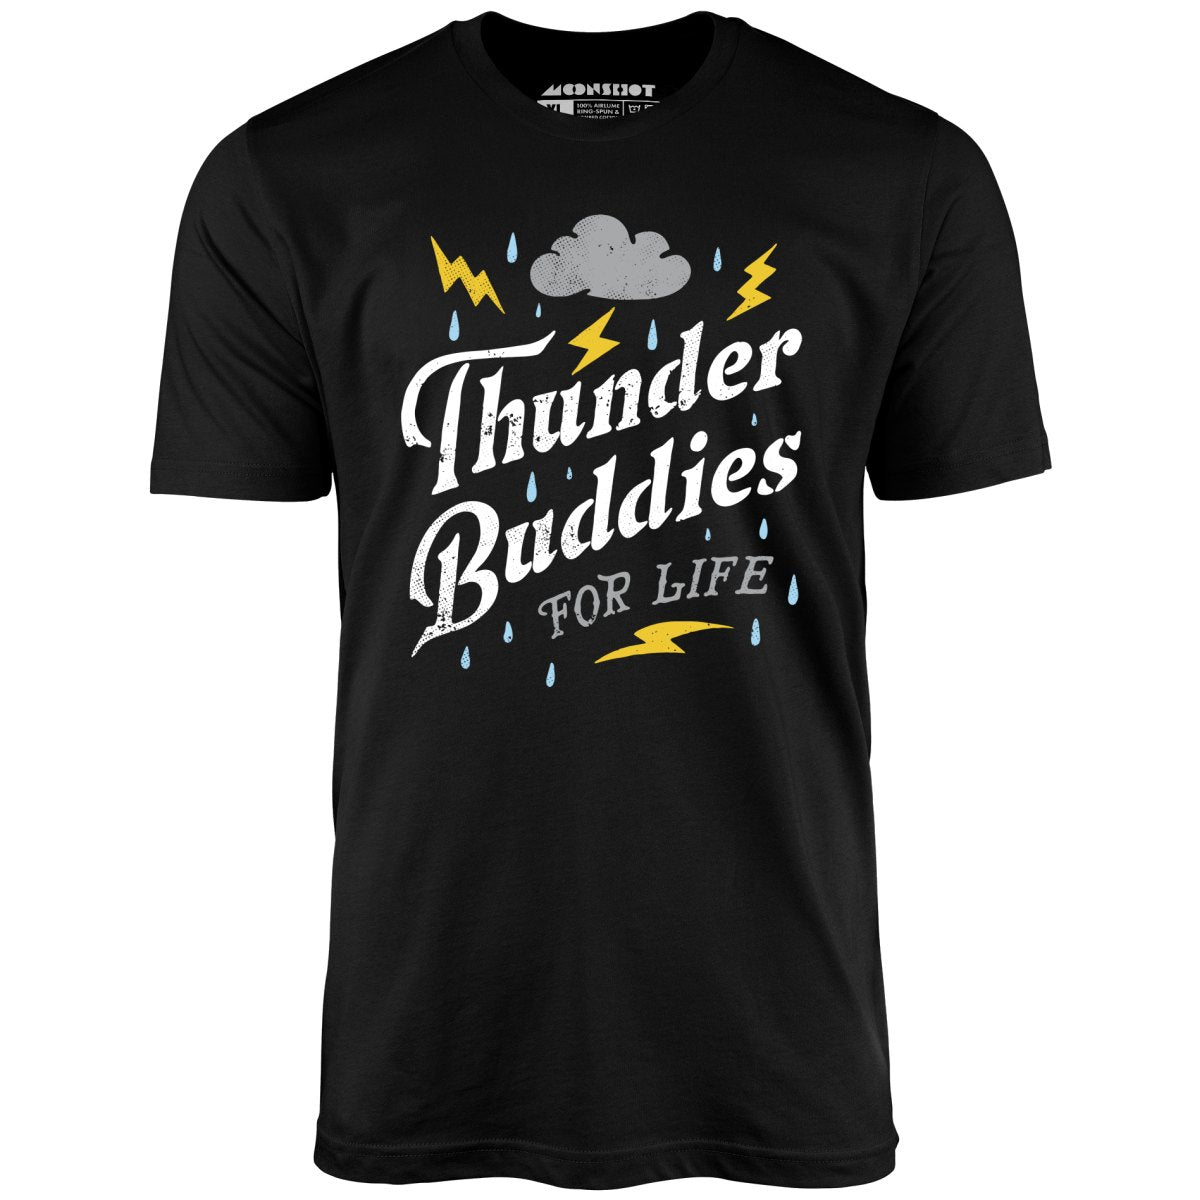 Thunder Buddies for Life - Unisex T-Shirt